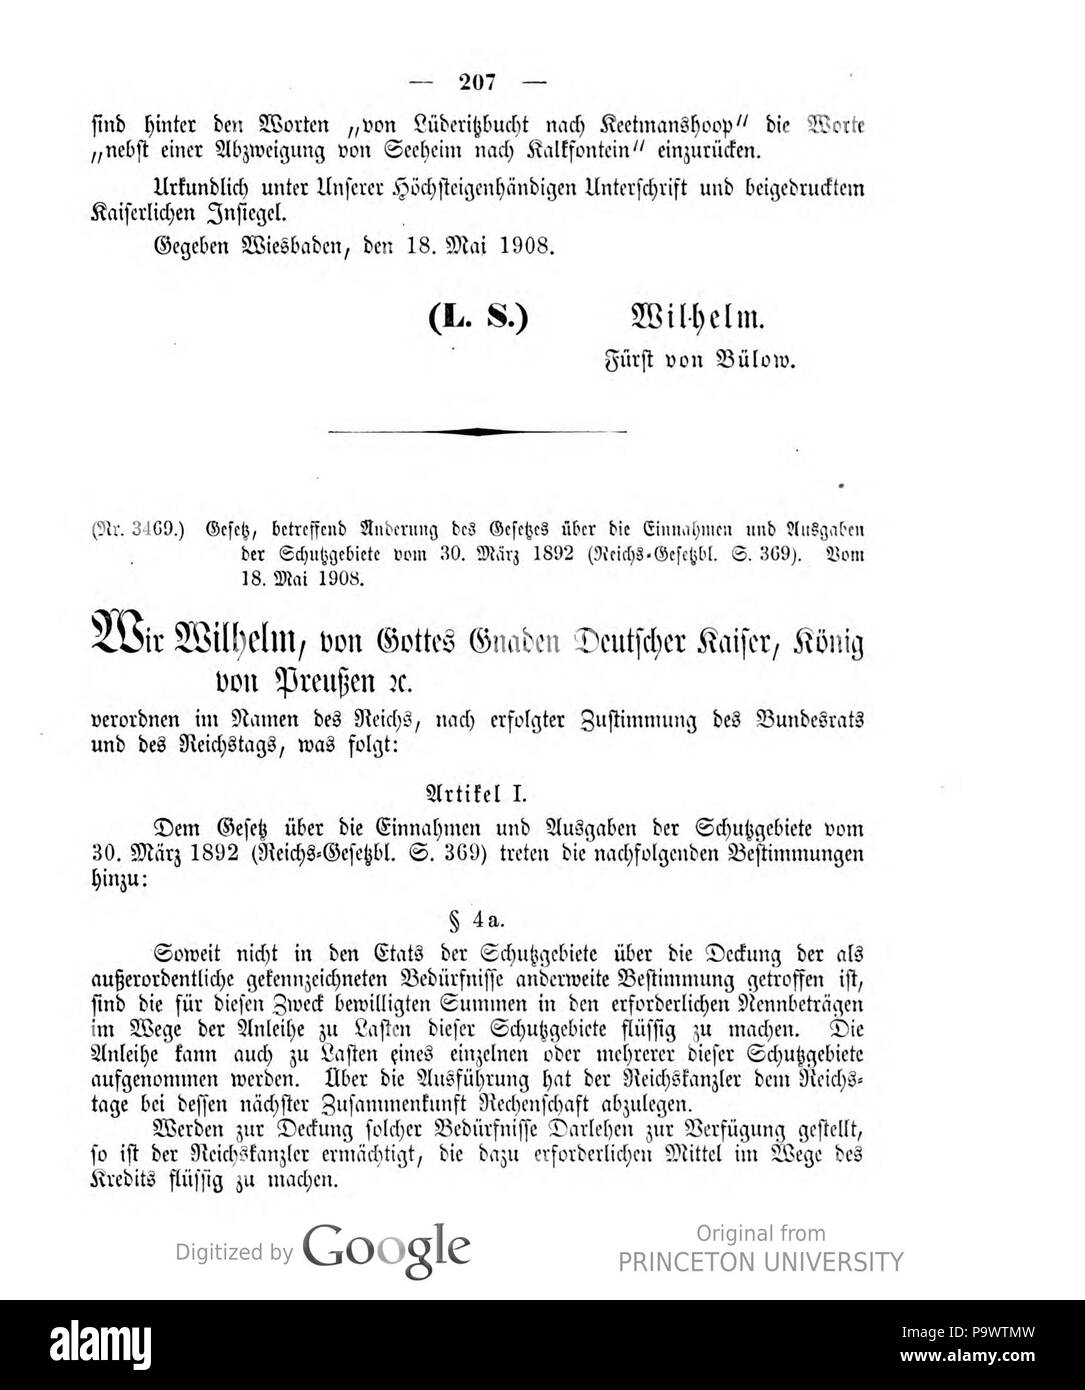 427 Deutsches Reichsgesetzblatt 1908 025 207 Stock Photo